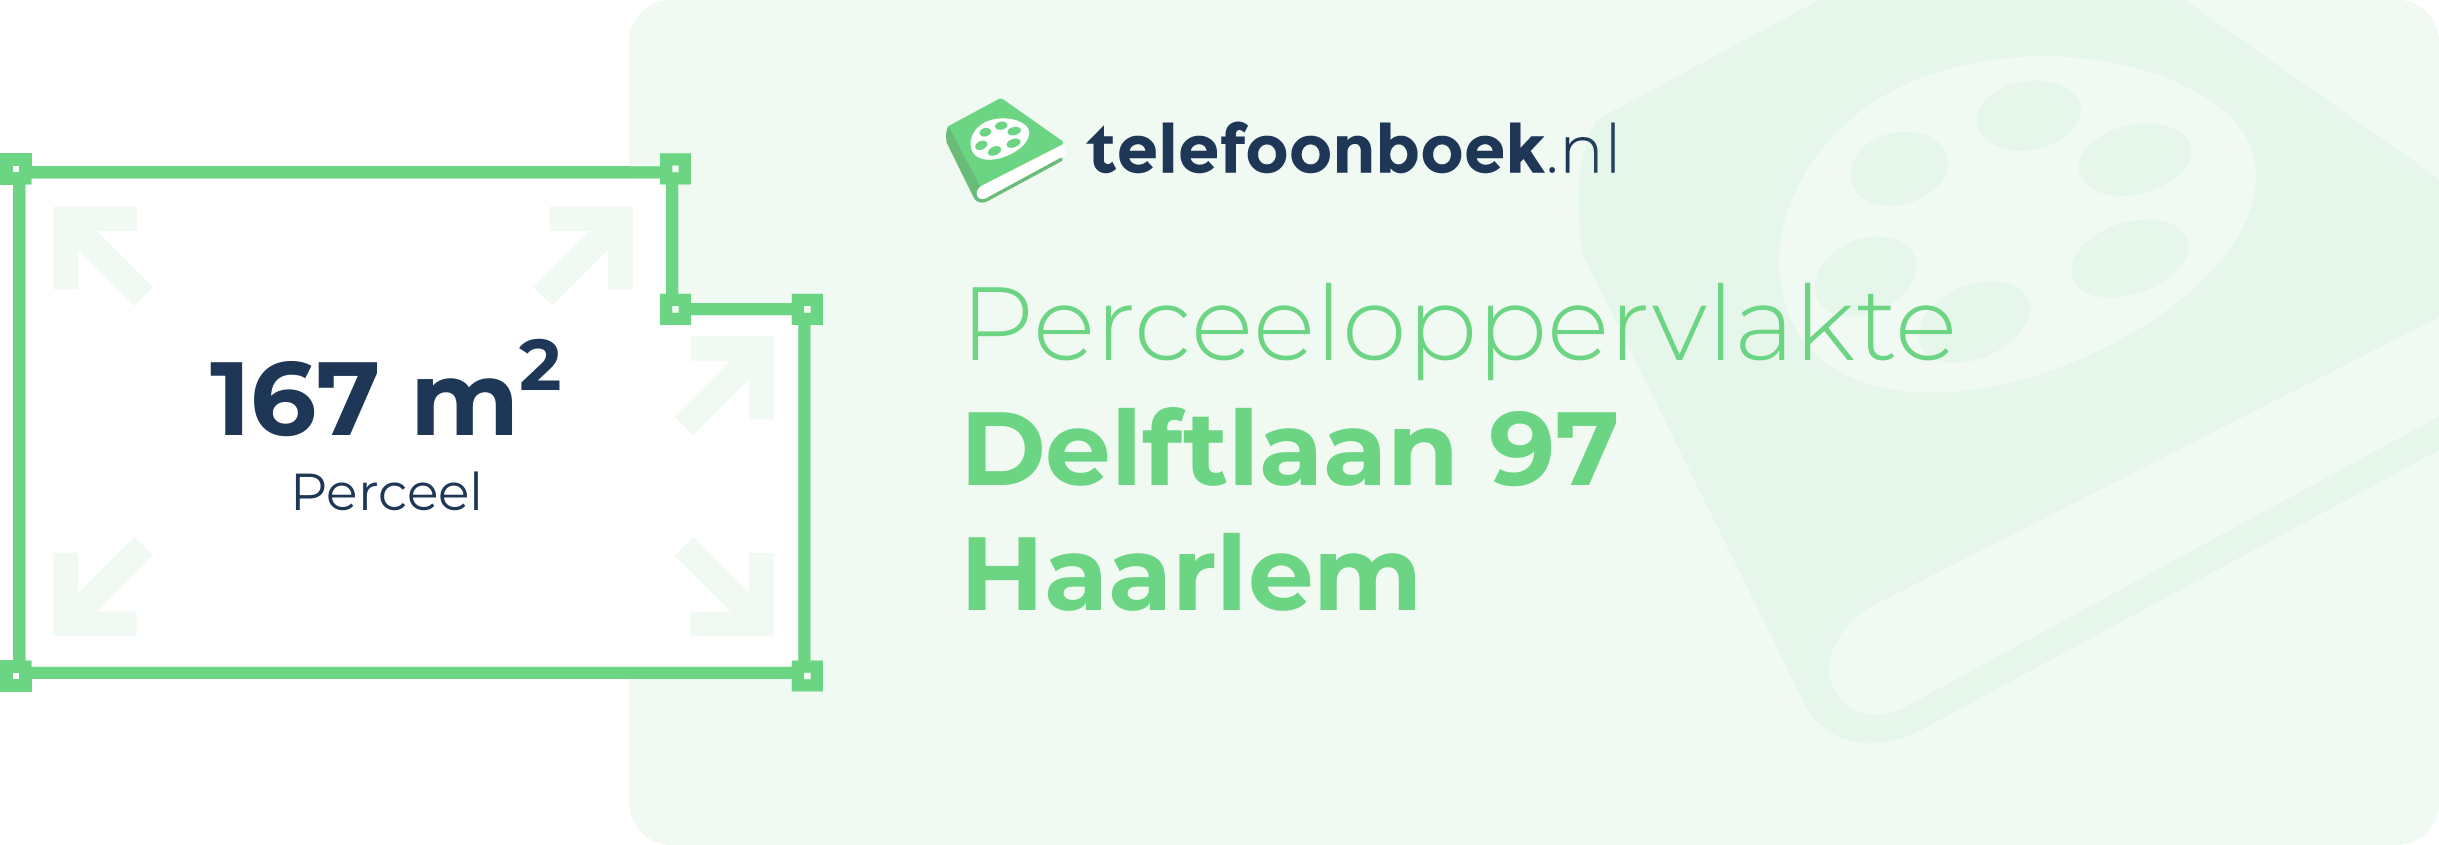 Perceeloppervlakte Delftlaan 97 Haarlem